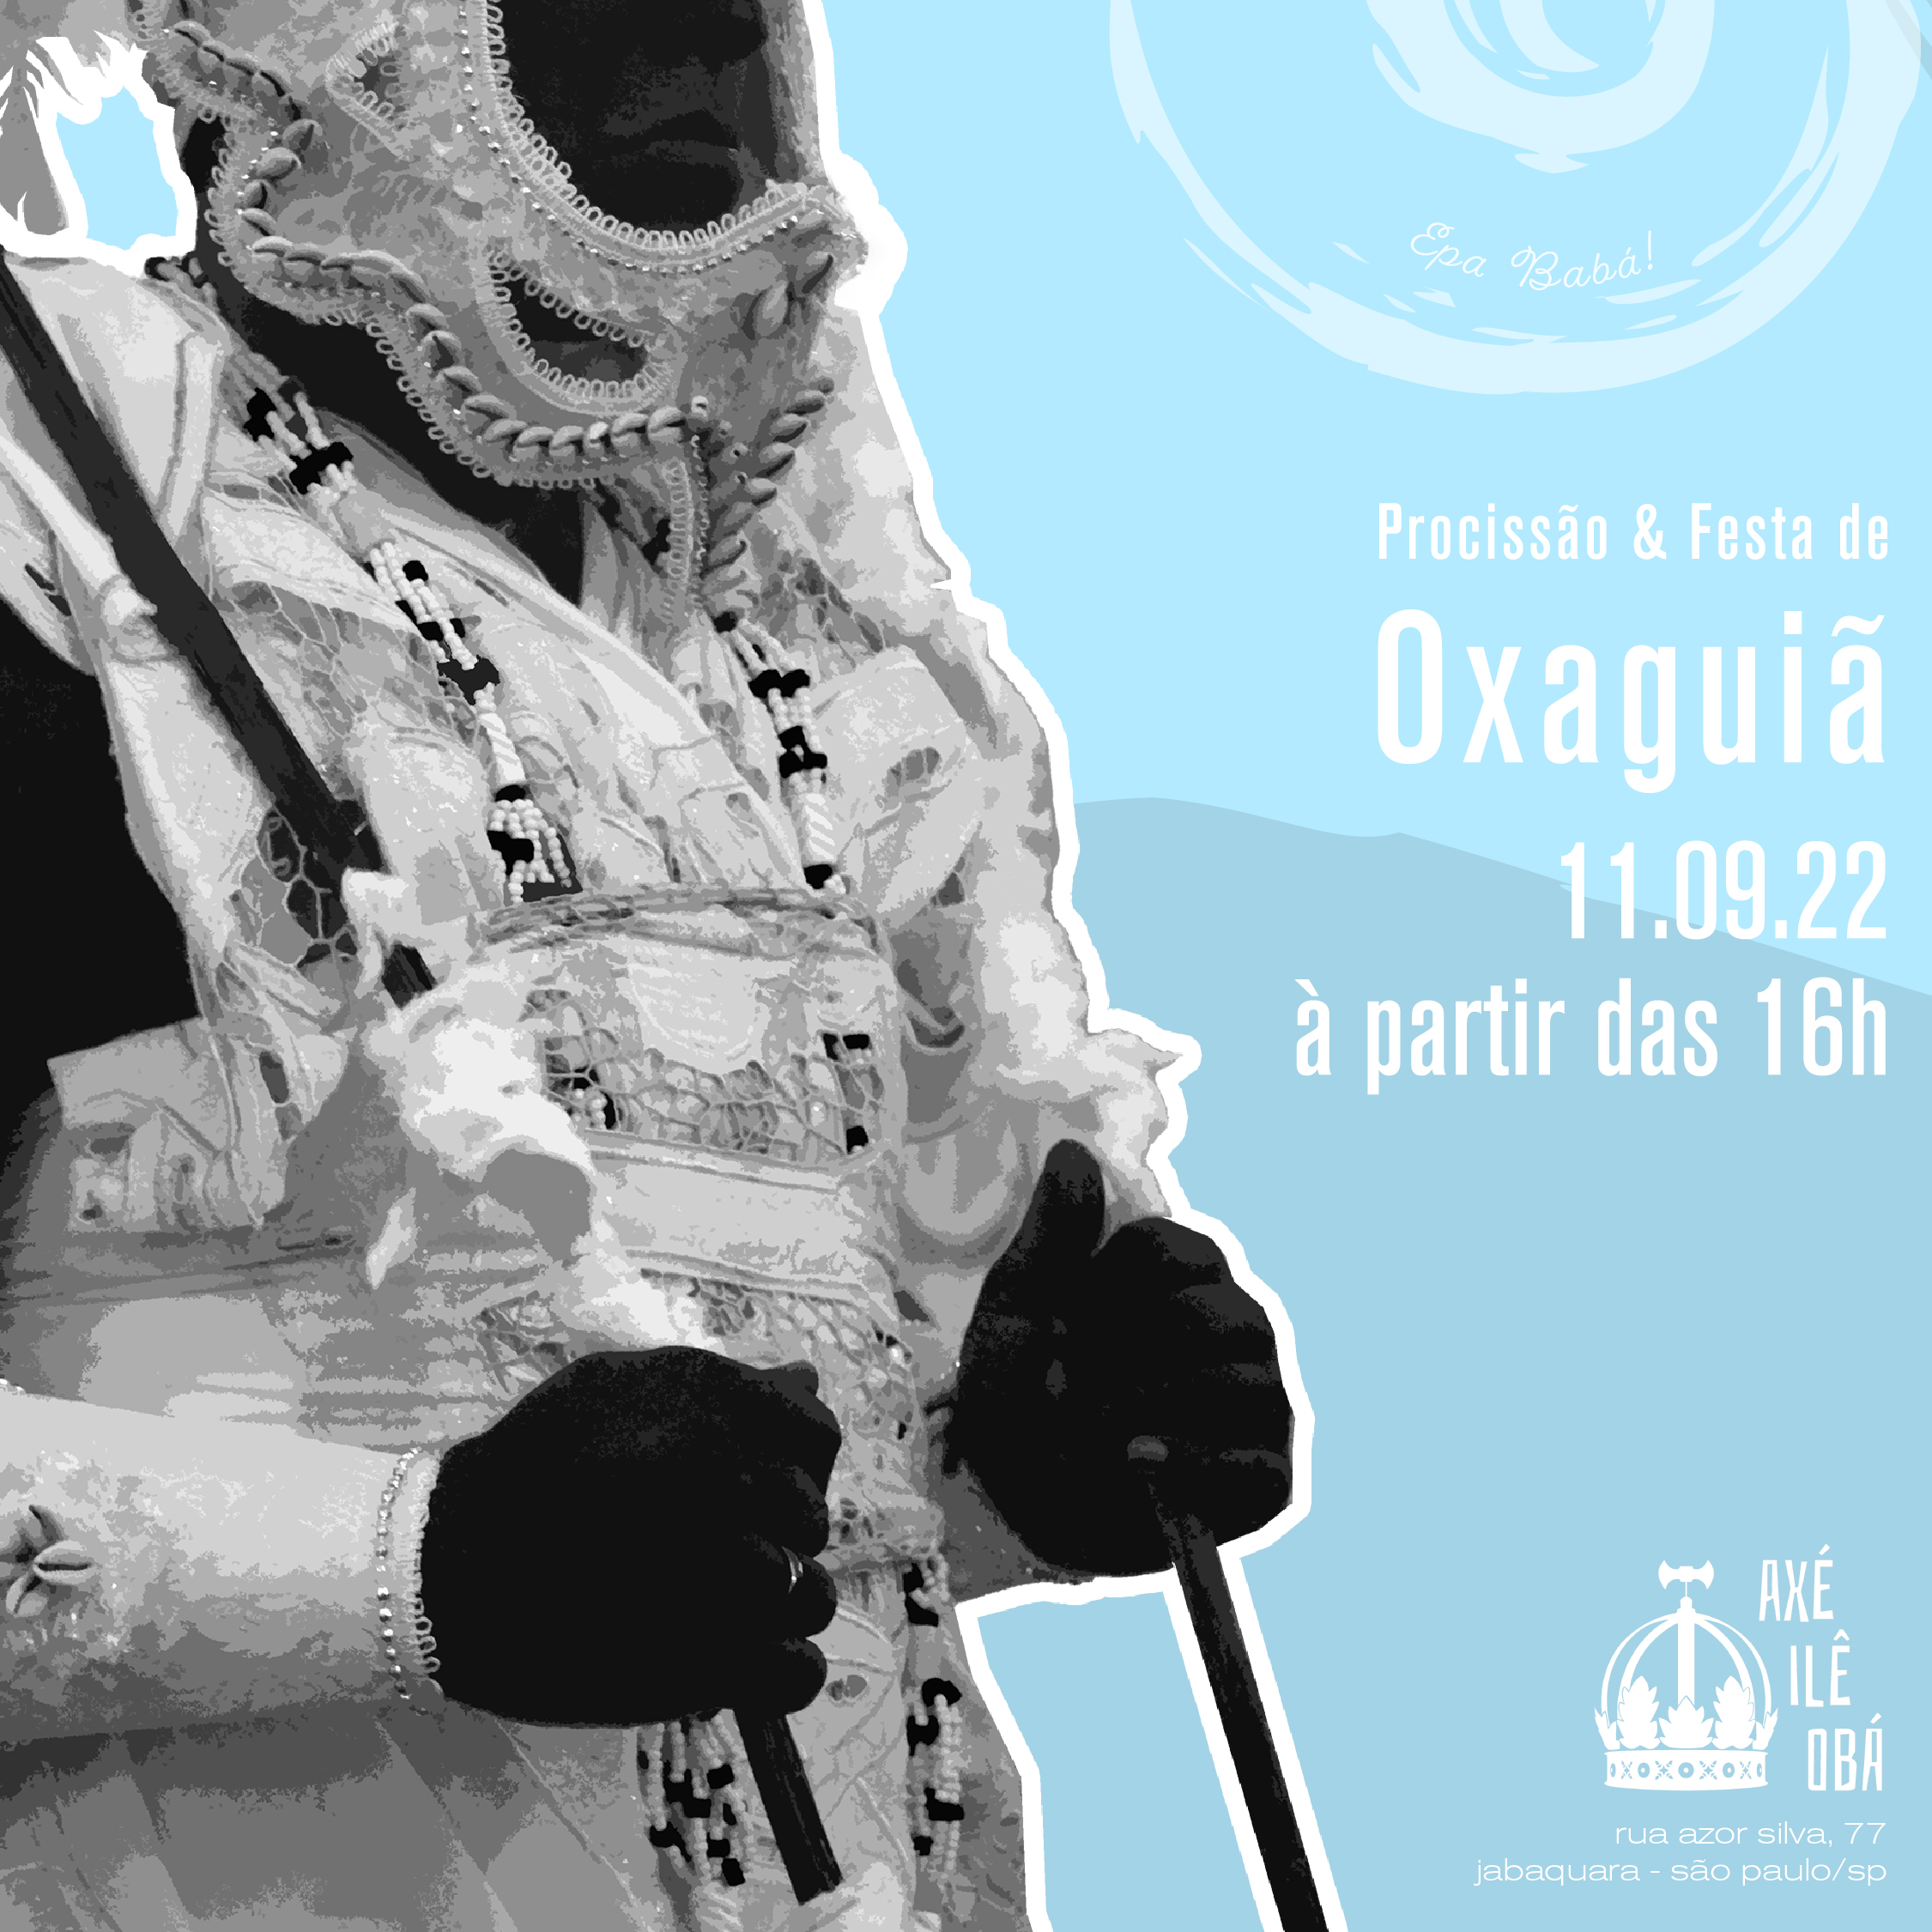 Procissão e Festa de Oxaguiã – Epà Bàbá!